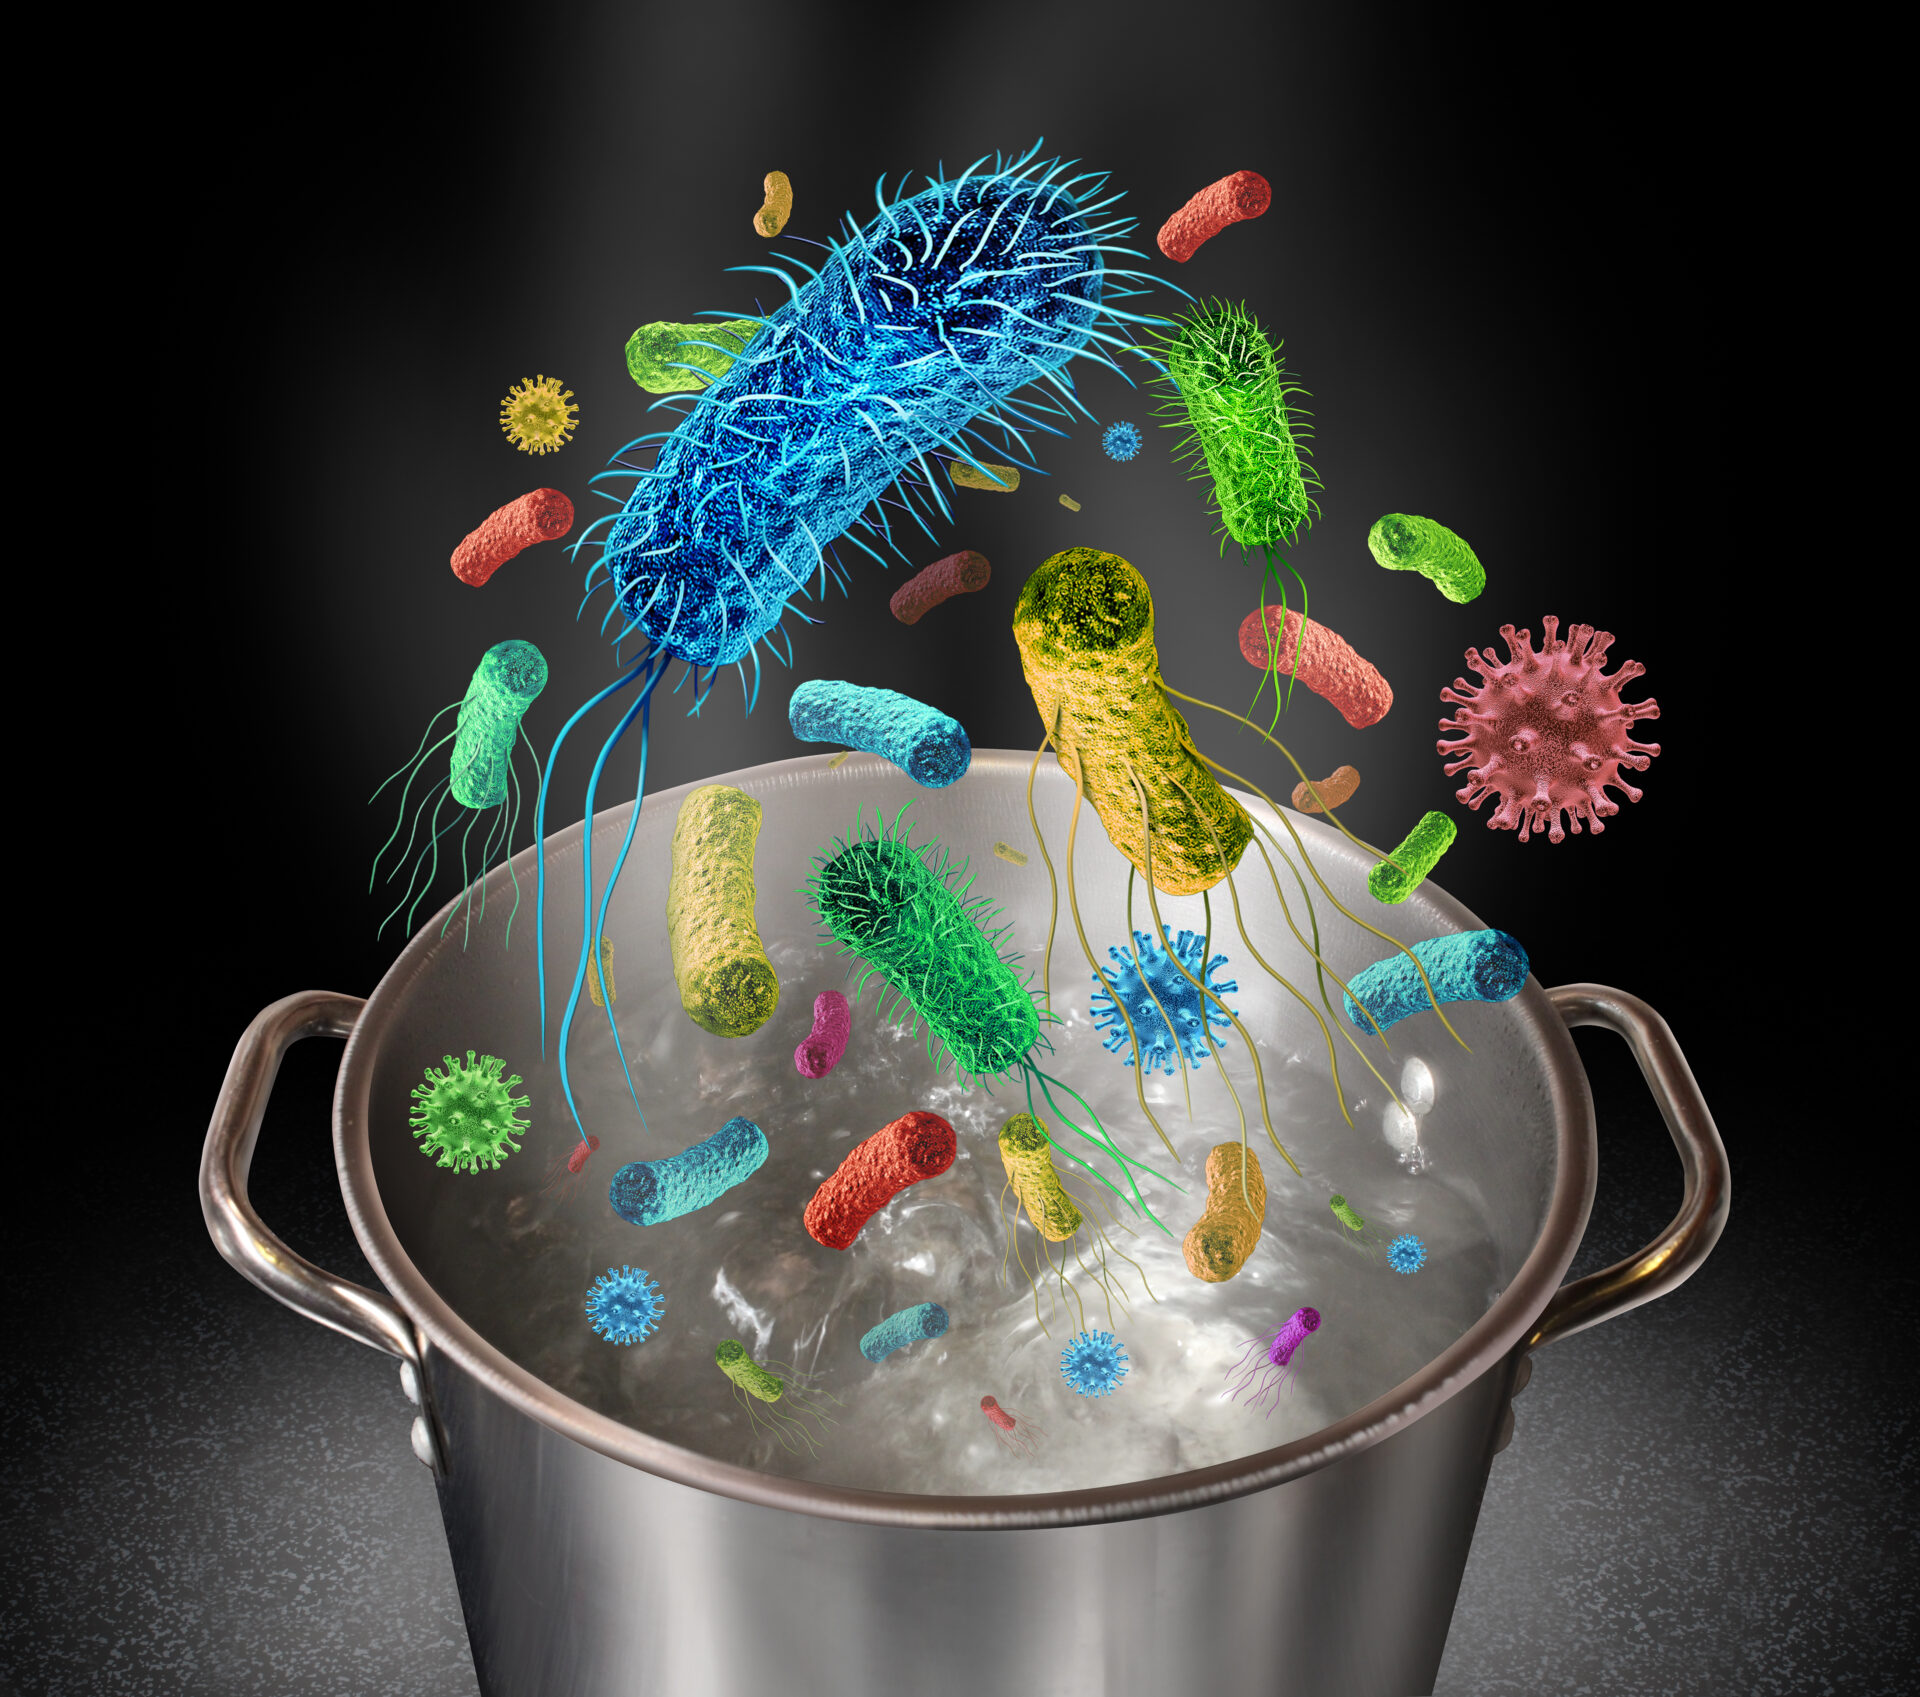 Бактерии в соленой воде. Микробы в воде. Микроорганизмы в воде. Вирусы и бактерии в воде. Микробы на посуде.